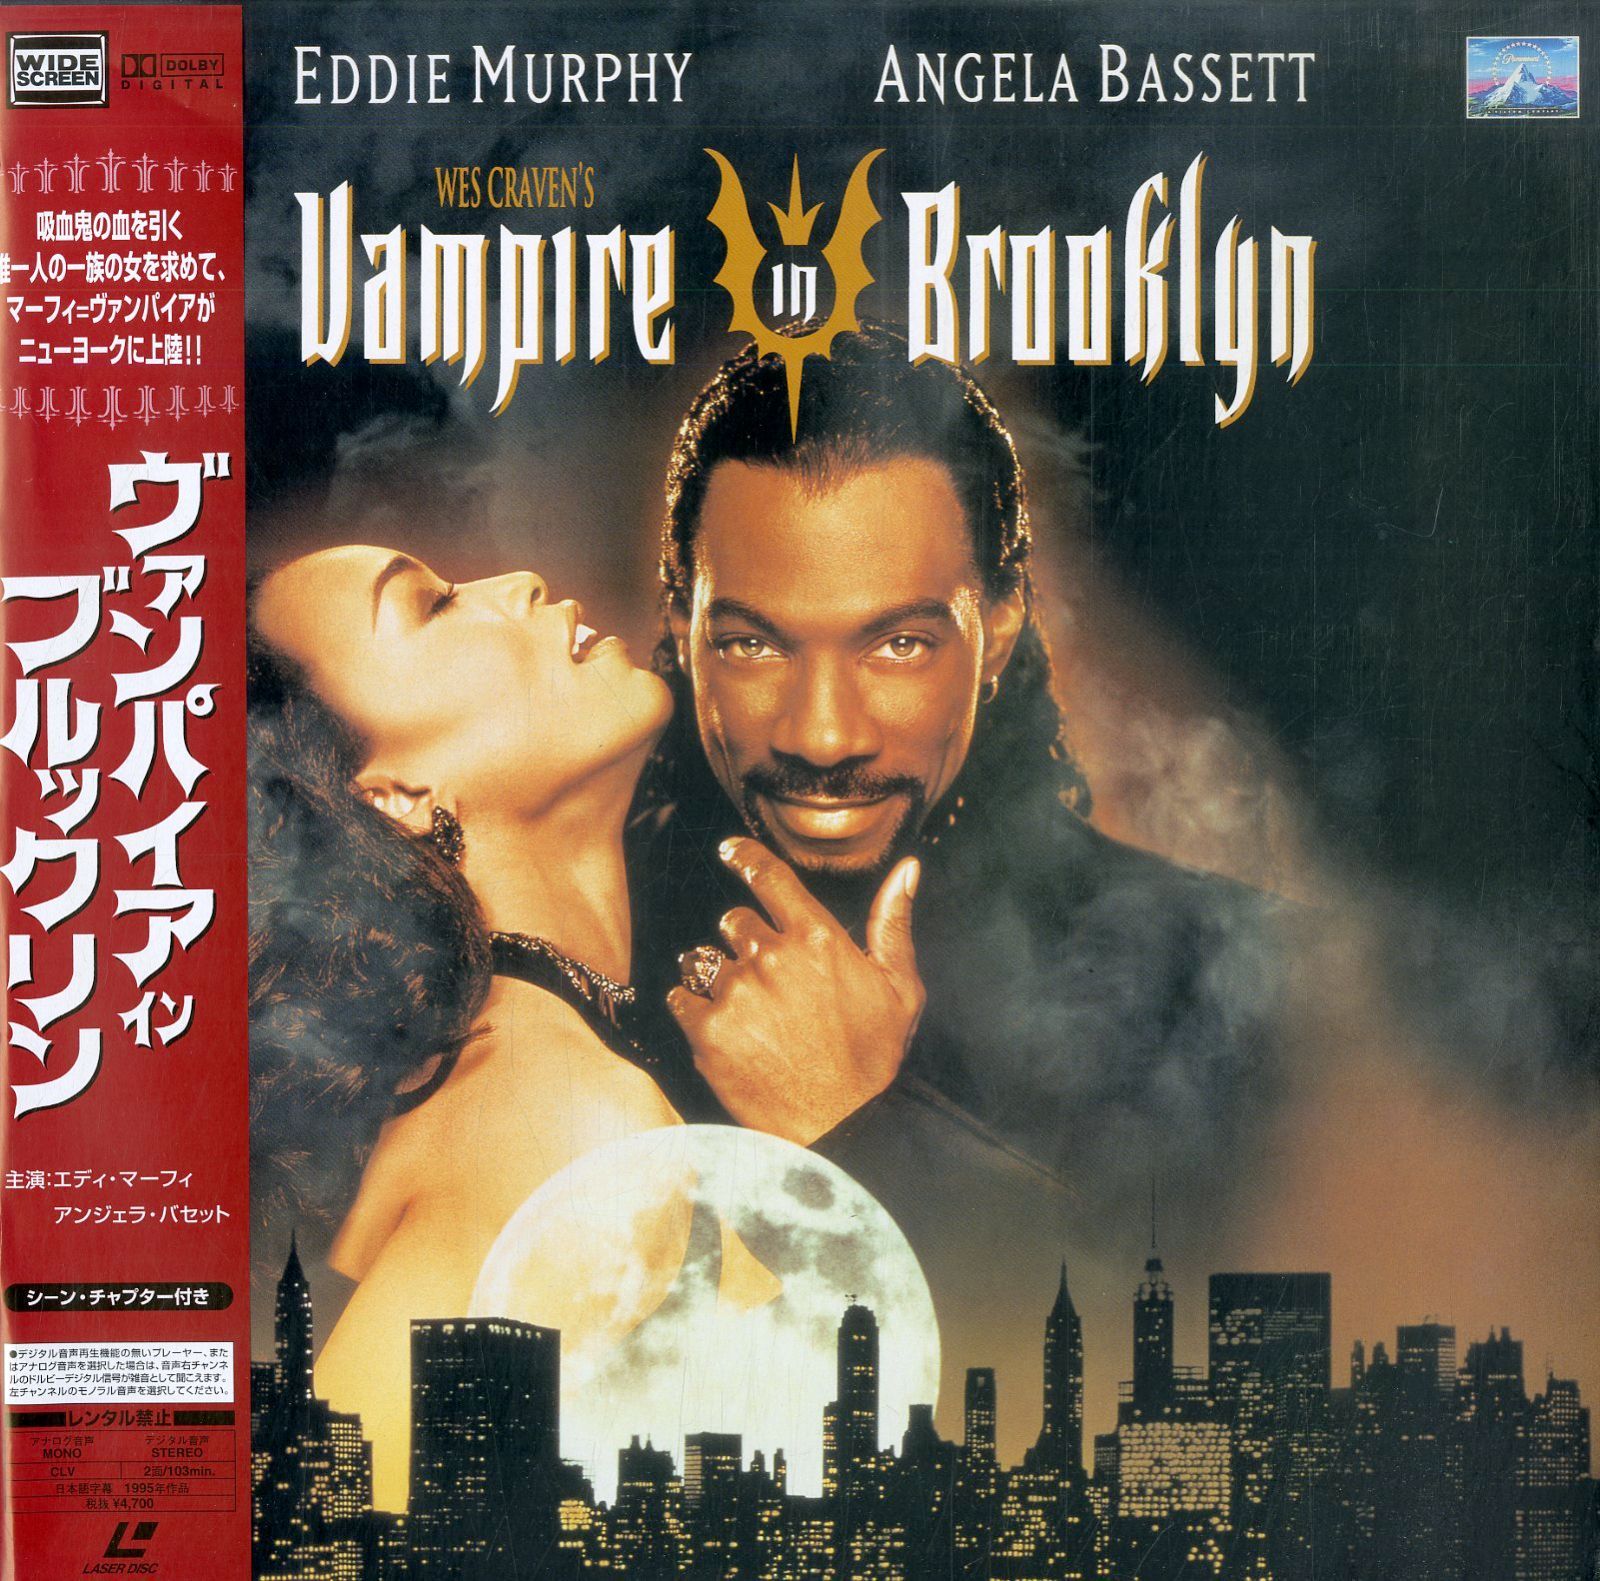 LD1枚 / ウェス・クレイヴン(監督) / エディ・マーフィ / ヴァンパイア・イン・ブルックリン Vampire In Brooklyn 1995  [Widescreen] (1997・PILF-2352)